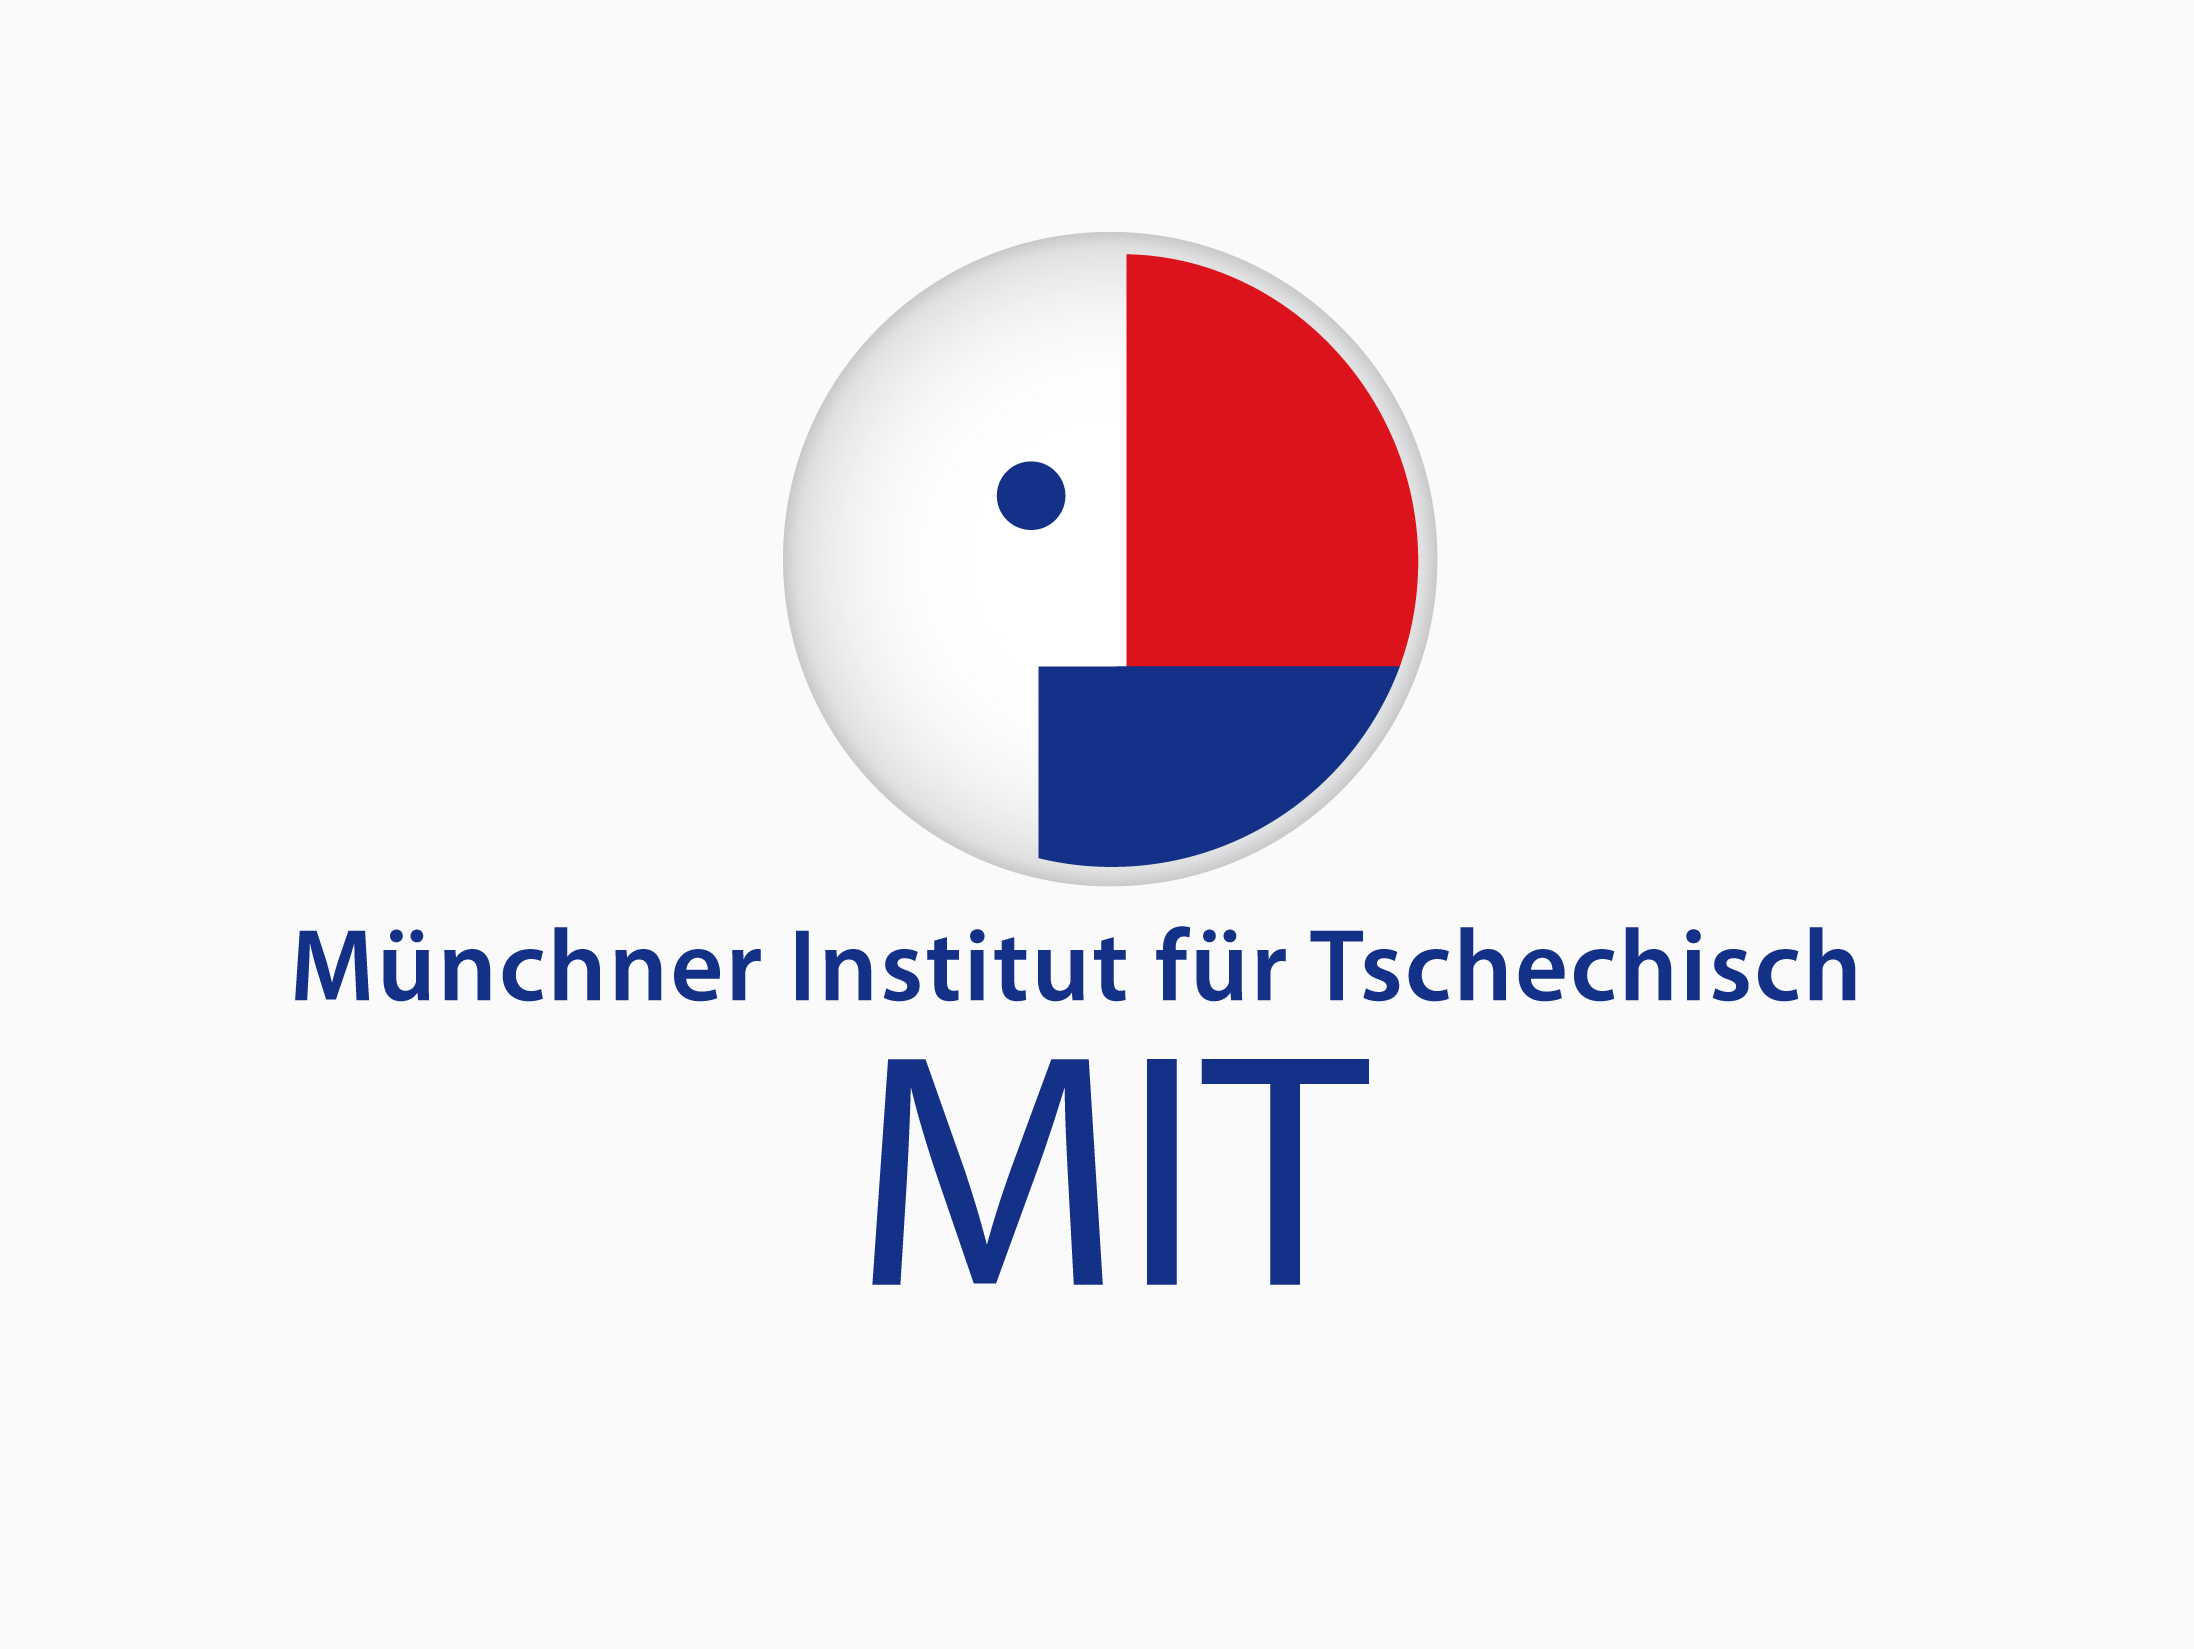 MIT Münchner Institut für Tschechisch, Tschechischkurse, München